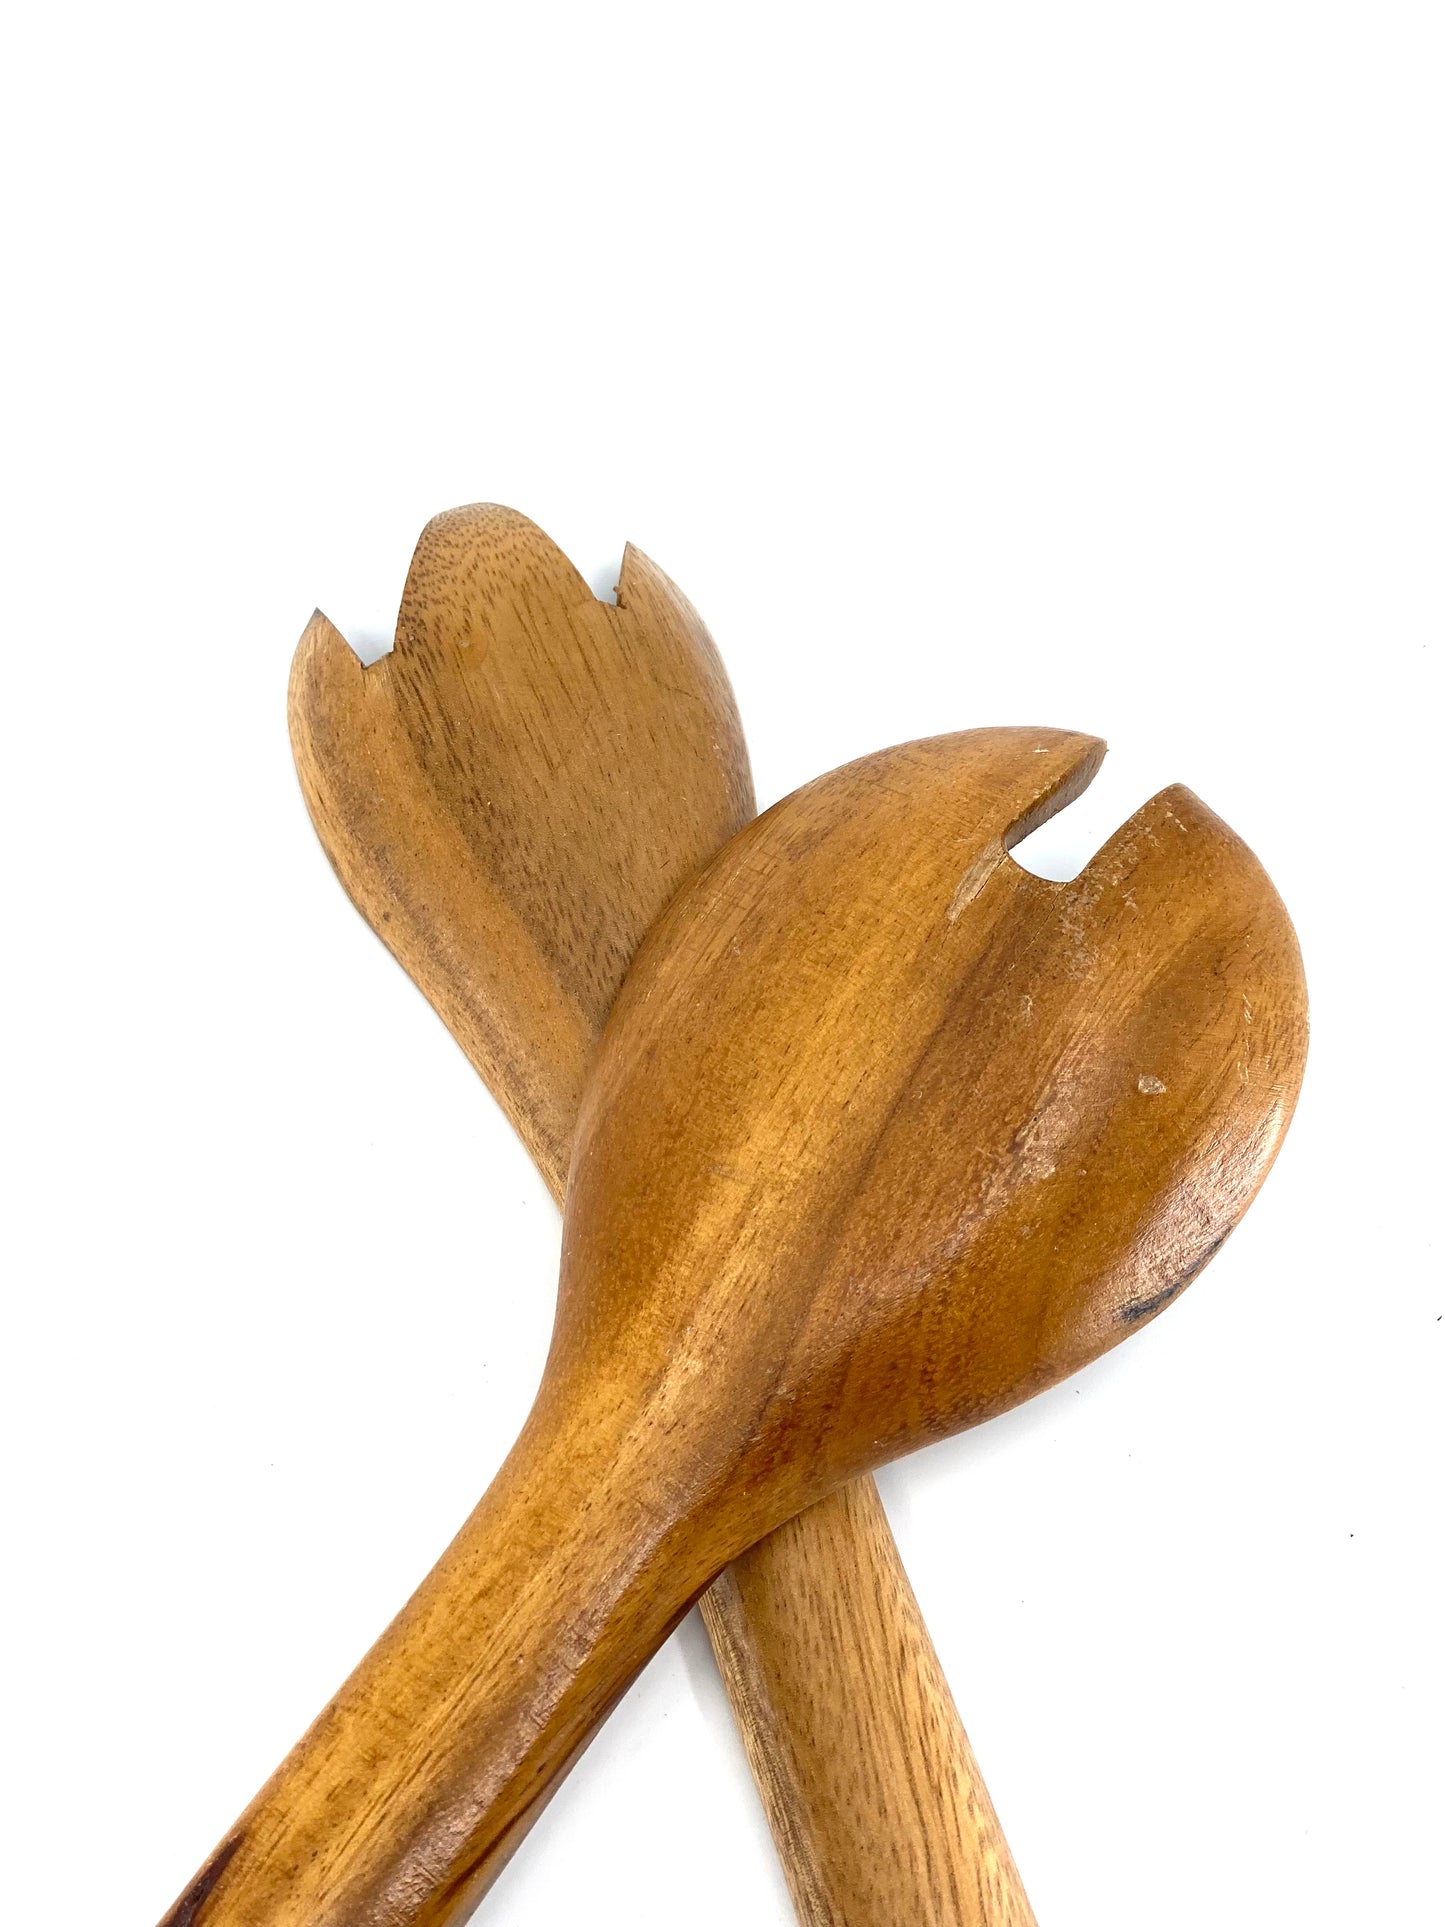 Vintage, MonkeyPod, Hand Carved, Serving Utensils, Wooden Spoons & Forks Sunsum®